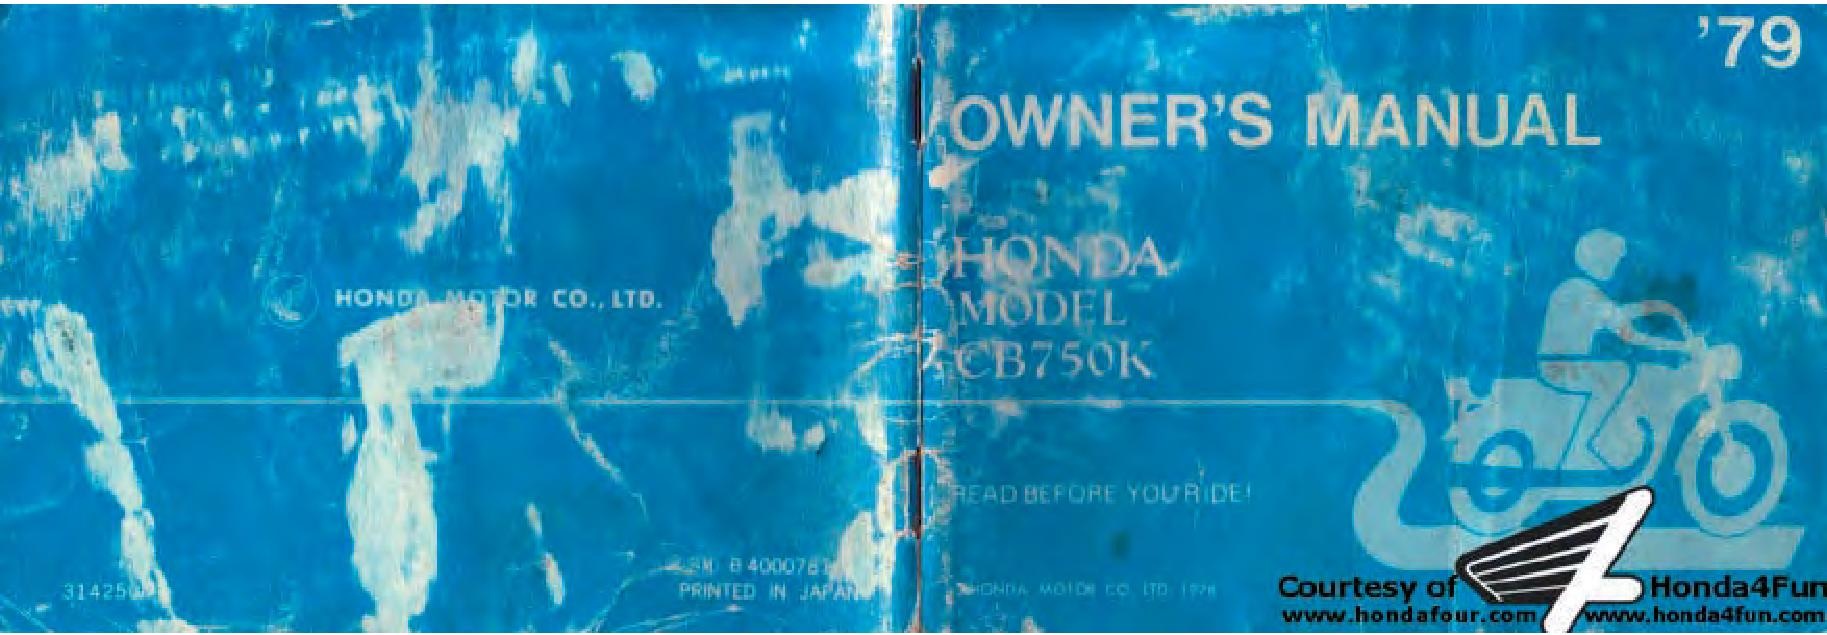 File:Honda CB750K 1979 Owners Manual.pdf